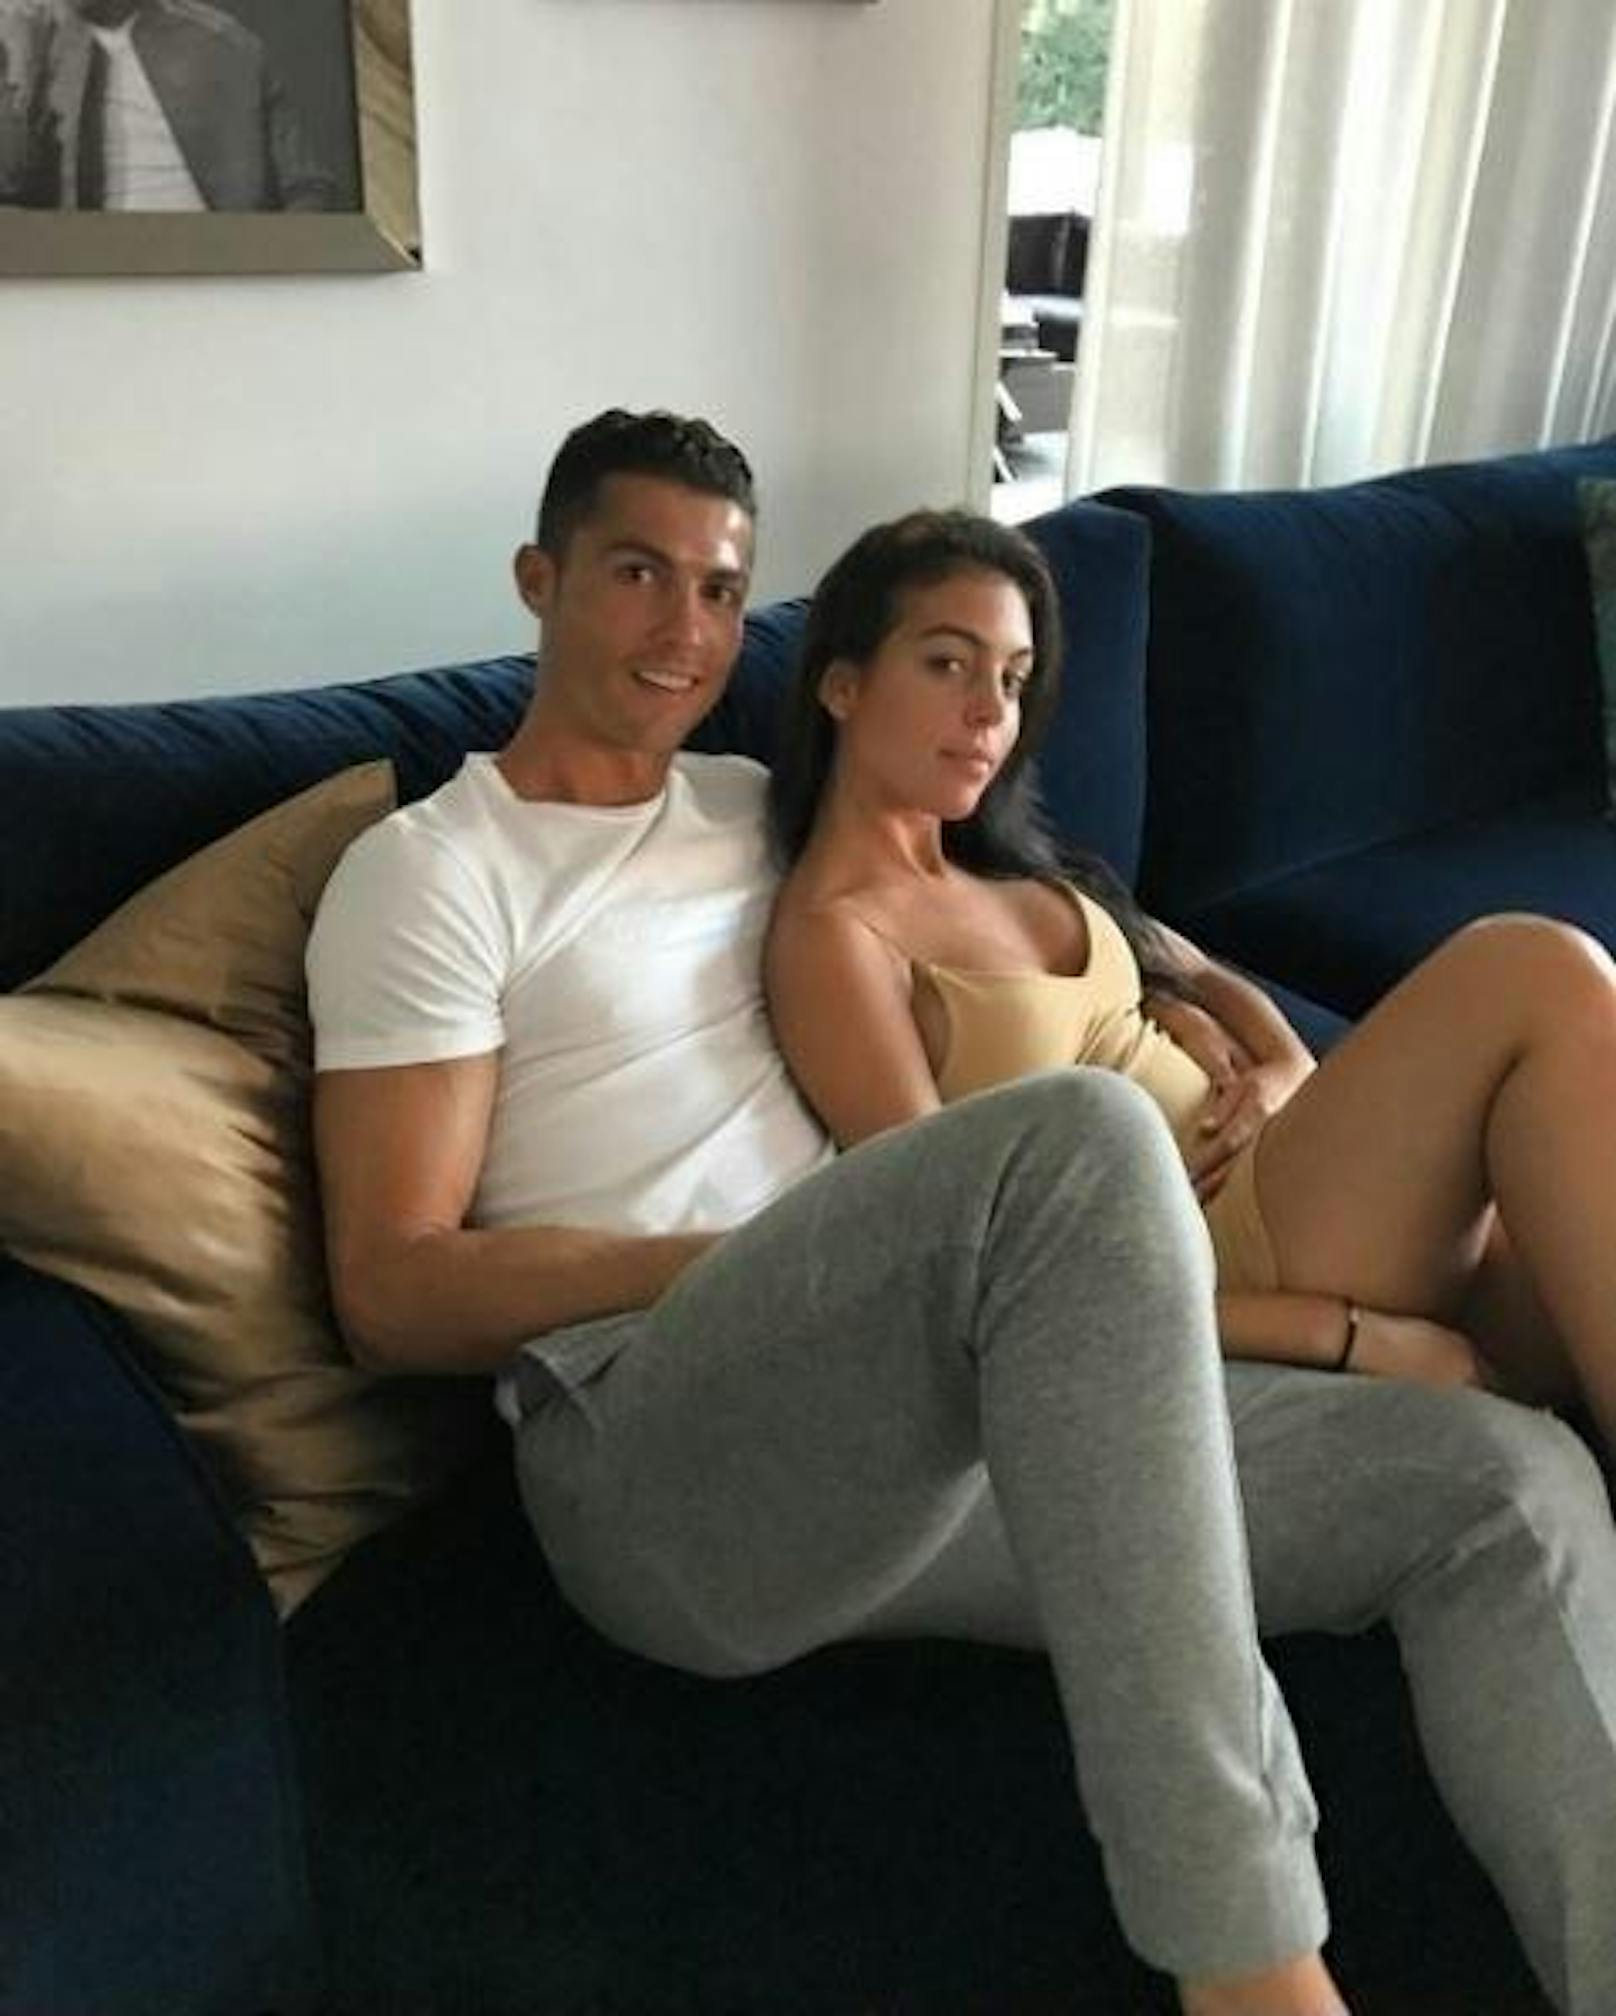 27.05.17: Ronaldo hat seine Hand auf dem Bauch seiner Freundin. Ist sie etwa schwanger?